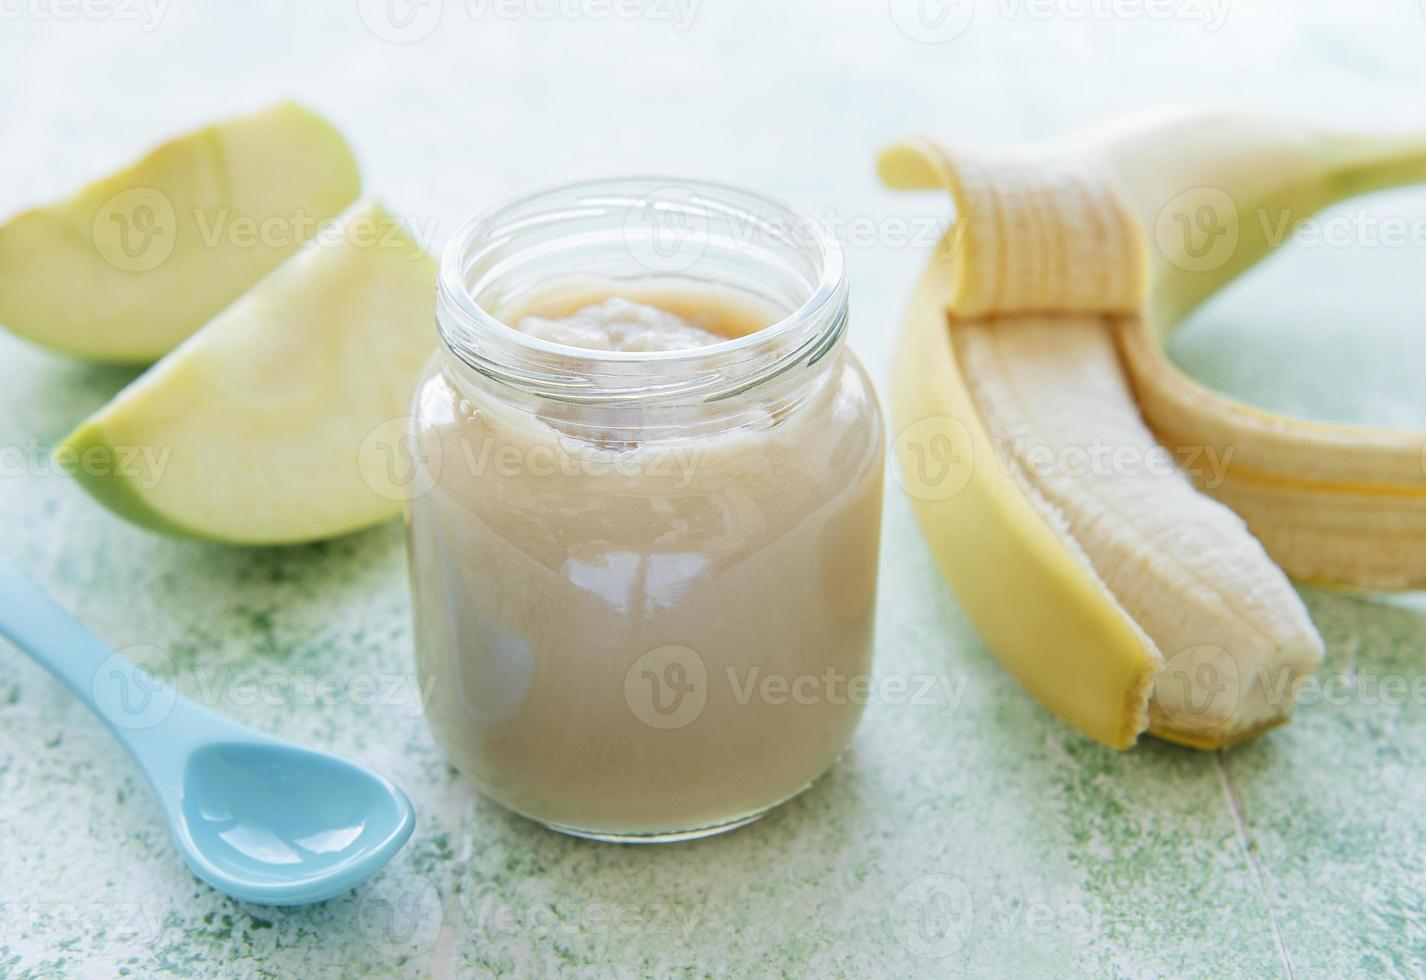 Jar of banana puree apples and banana photo